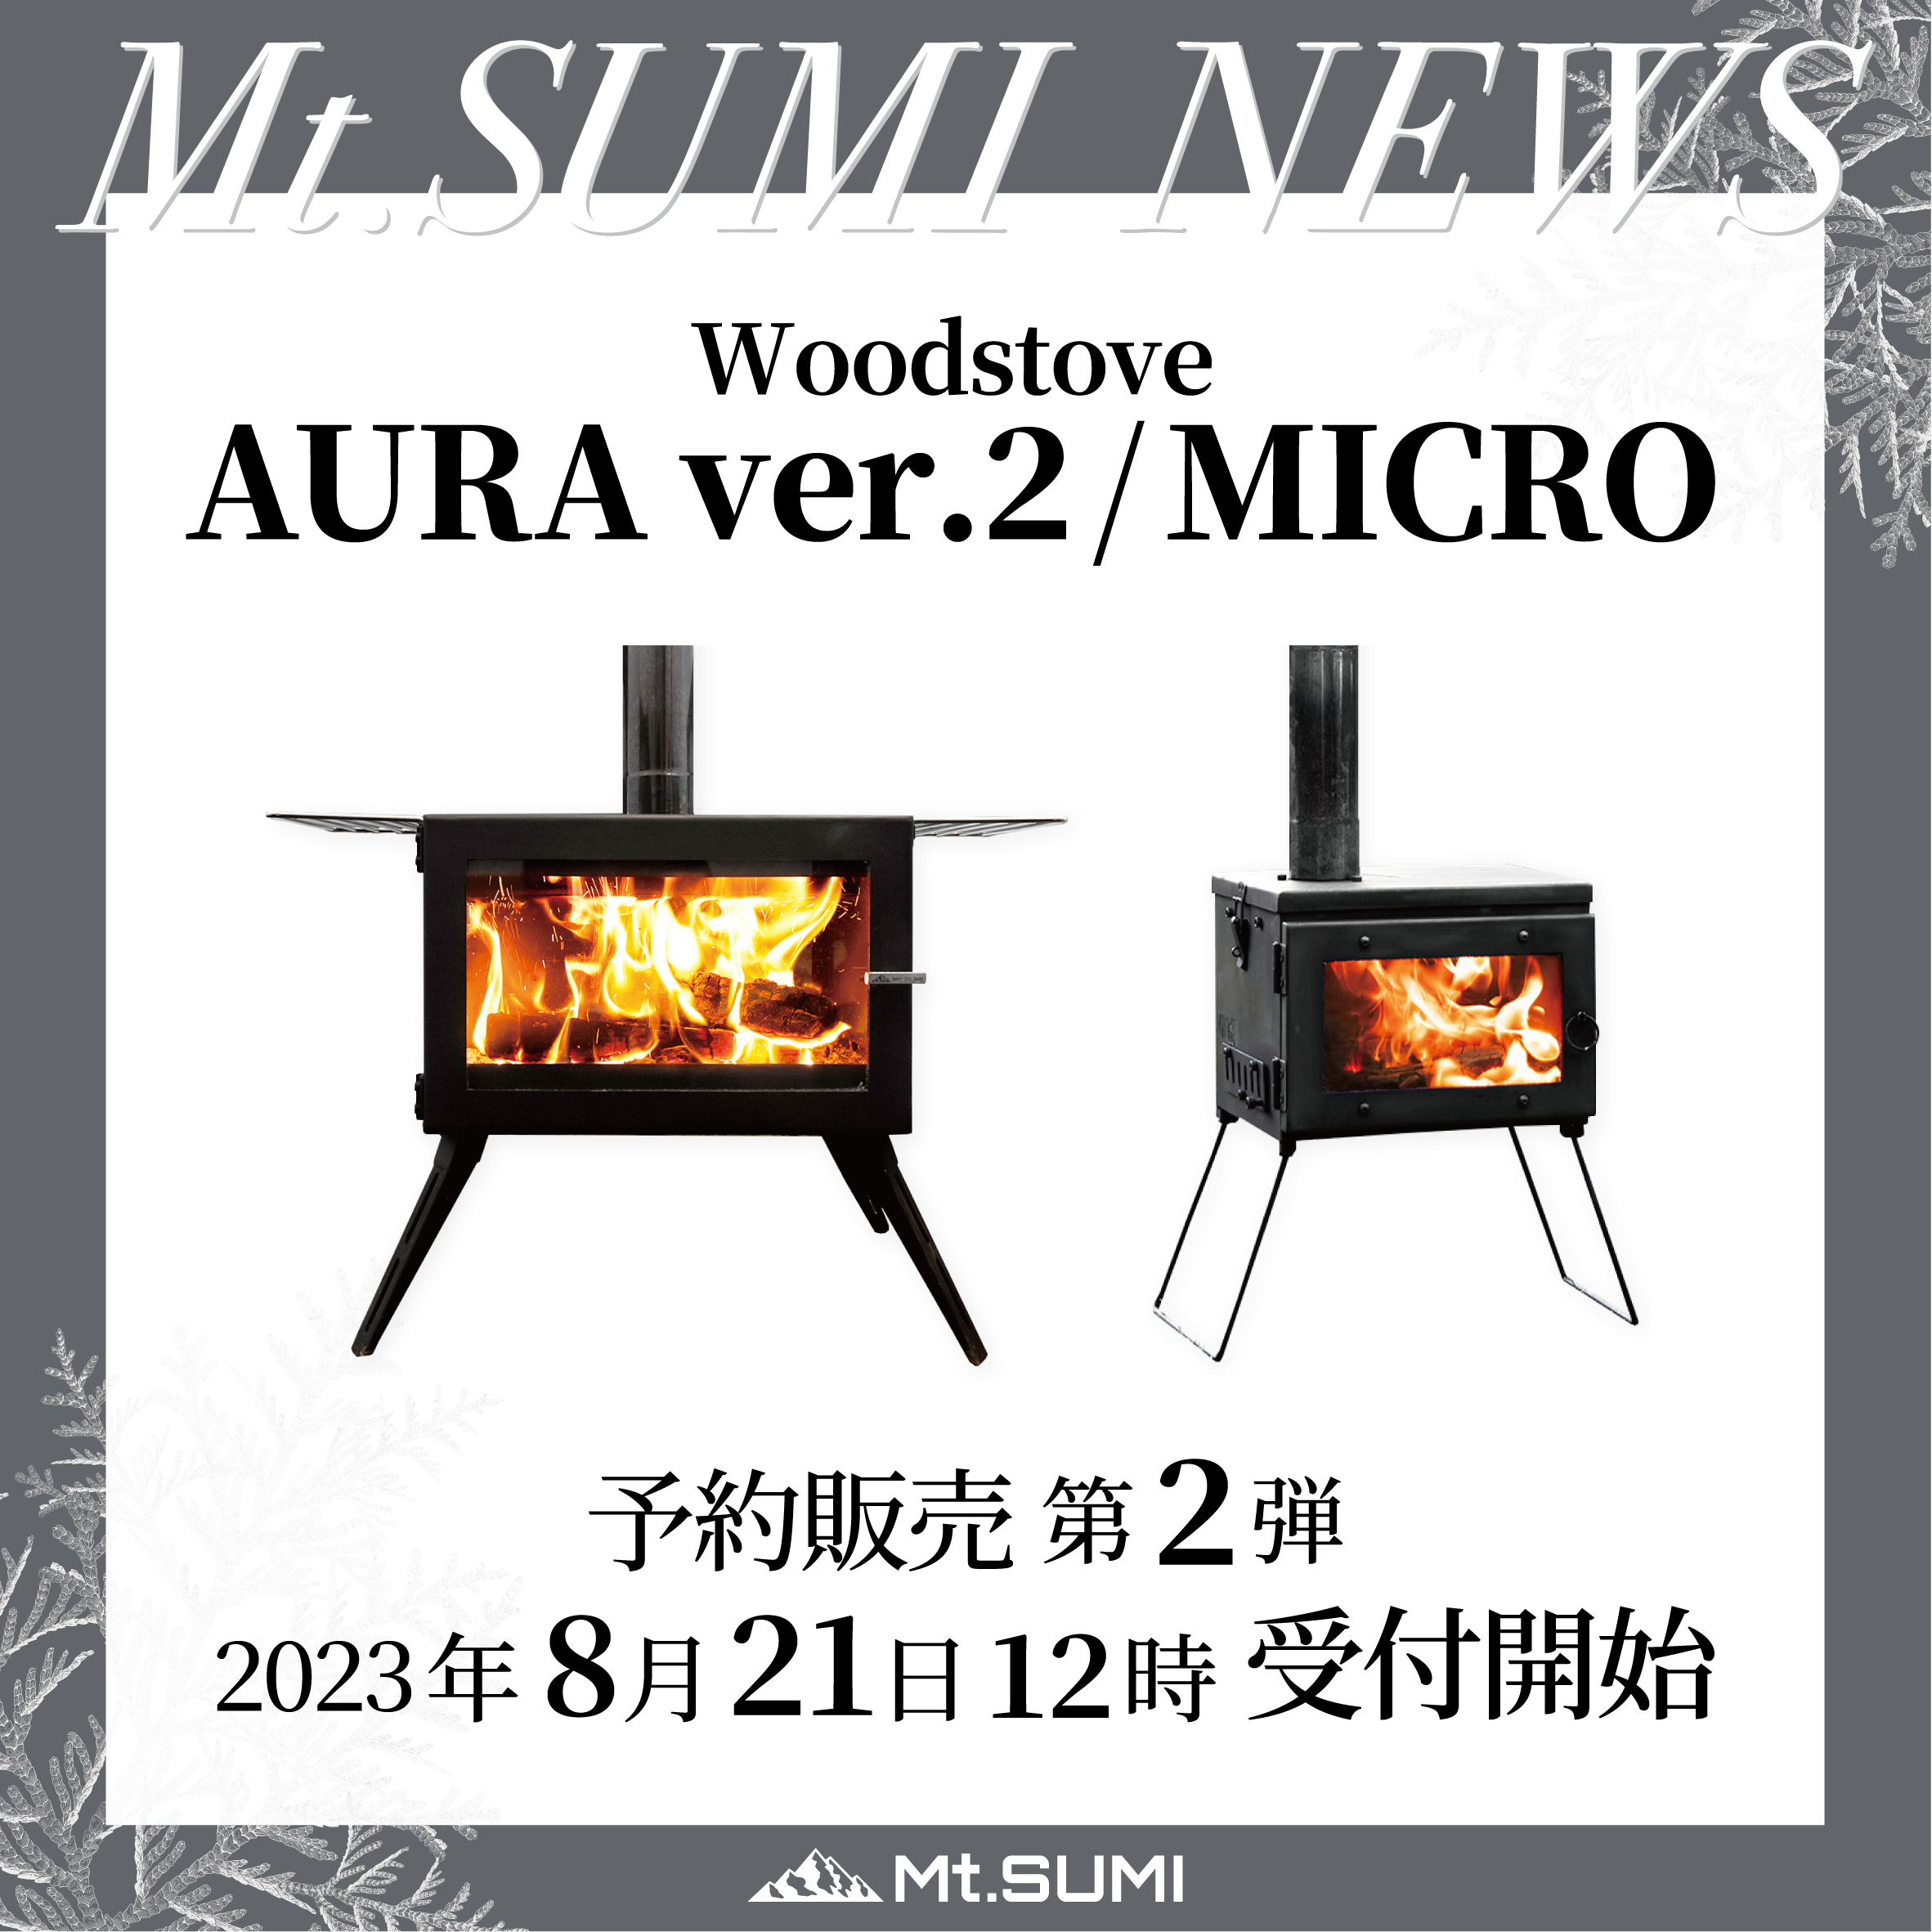 発売情報】「AURA ver.2」「MICRO」 「煙突ガード ver.2」予約販売 第2